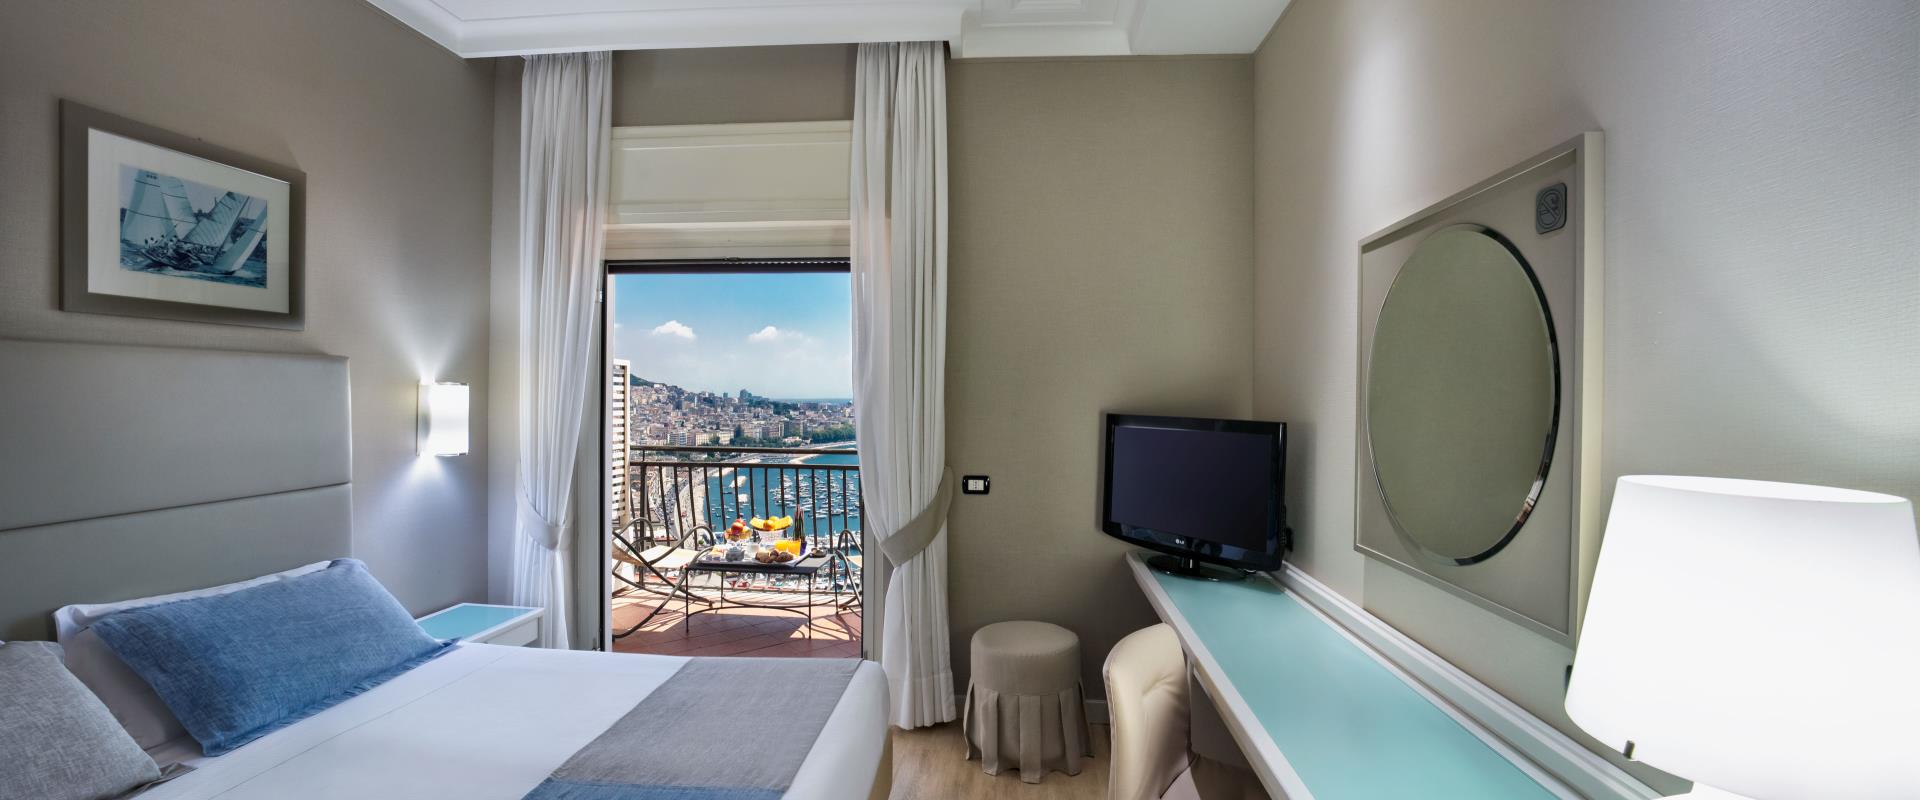 Le camere Superior Vista Mare del BW Signature Collection Hotel Paradiso sono preziose stanze affacciate direttamente sul Golfo di Napoli che consentono di godere di questo magnifico panorama da una posizione esclusiva.